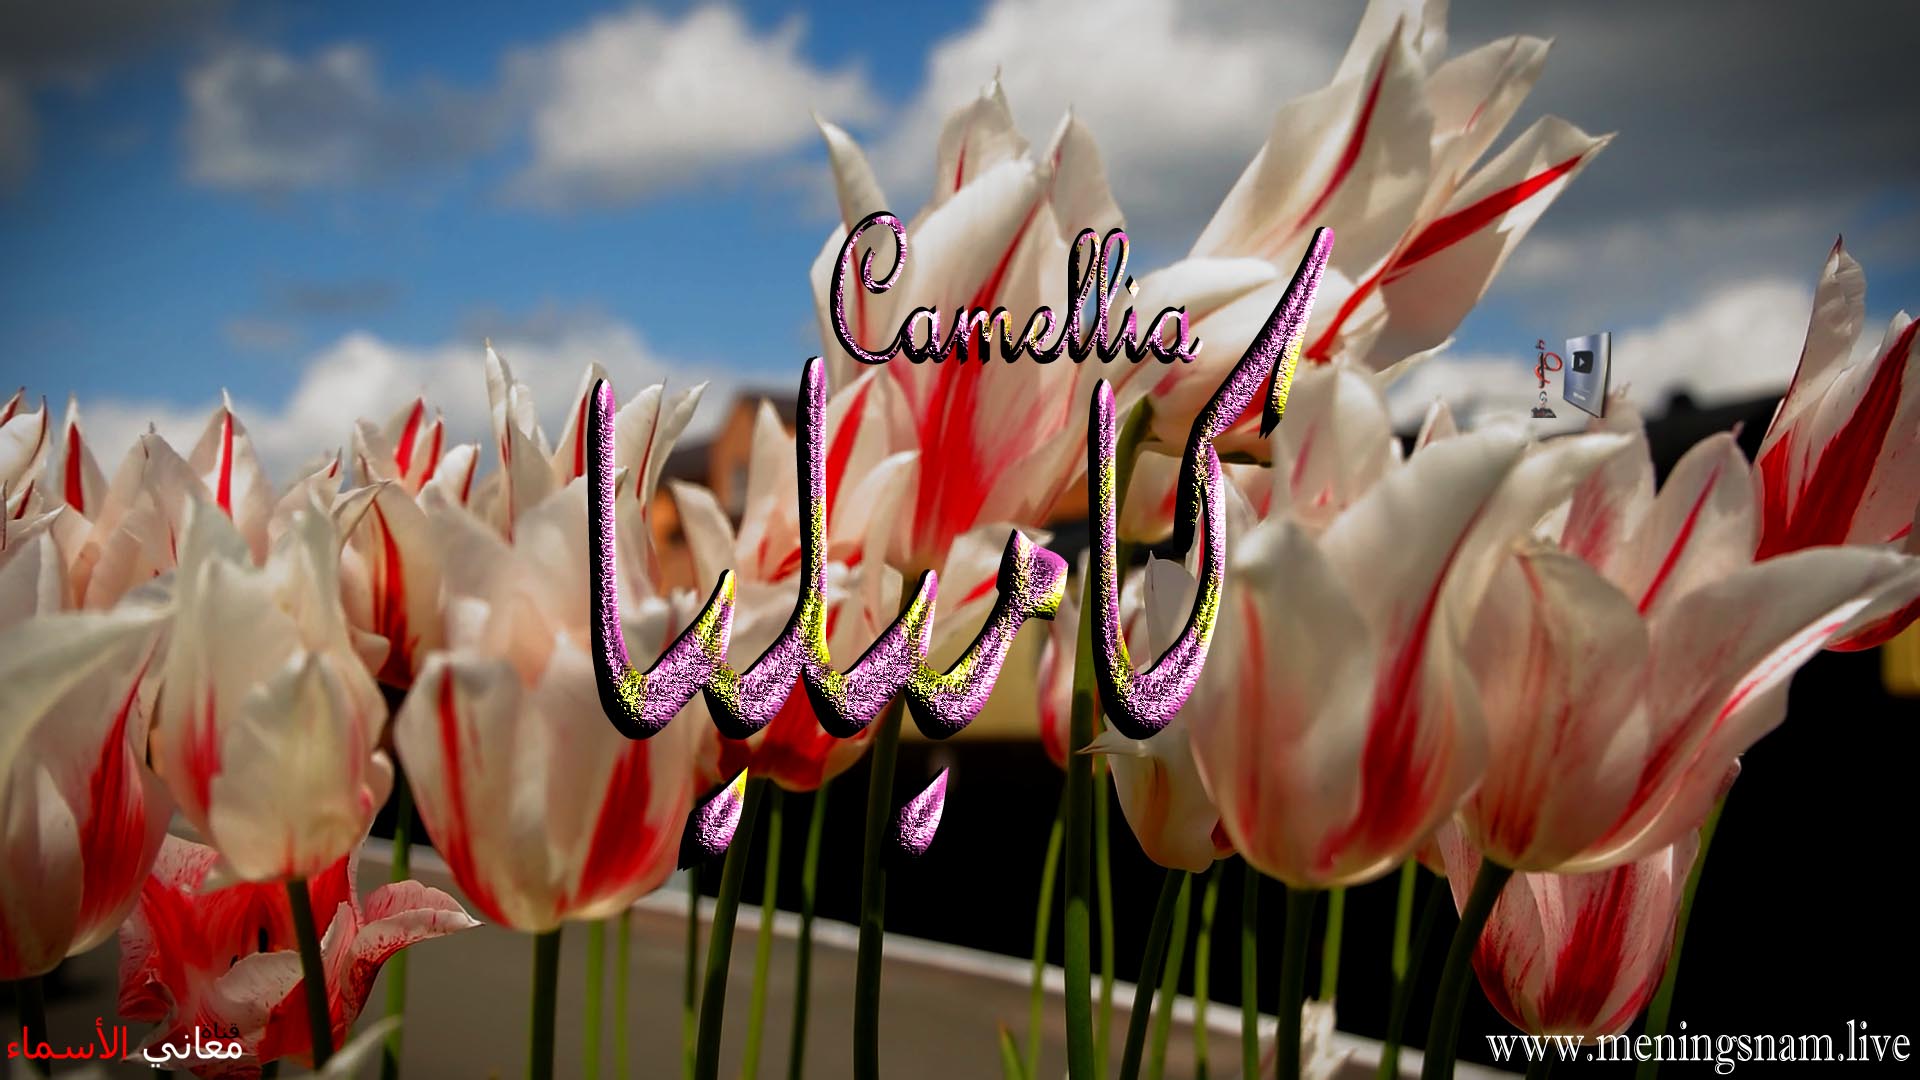 معنى اسم, كاميليا, وصفات ,حاملة, هذا الاسم, Camellia,